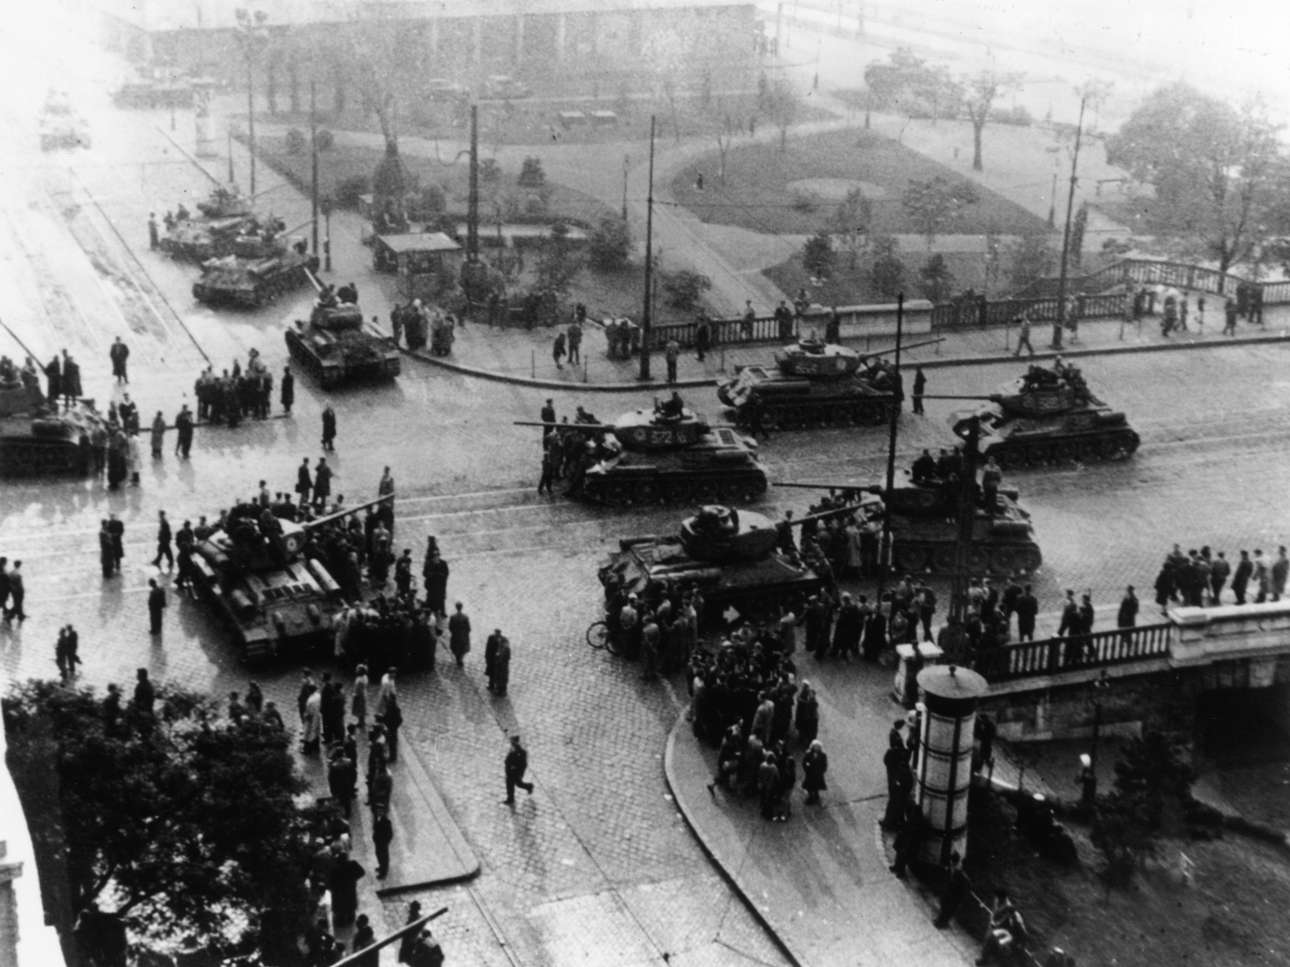 Η εξέγερση στην Ουγγαρία (1956). Σοβιετικά τεθωρακισμένα στο κέντρο της Βουδαπέστης. Για κάποιες μέρες είχε επικρατήσει η εσφαλμένη εντύπωση ότι οι Σοβιετικοί αποχωρούσαν. Τελικά στράφηκαν κατά των εξεγερμένων Ούγγρων. Οι νεκροί ξεπέρασαν τις 2.500. 